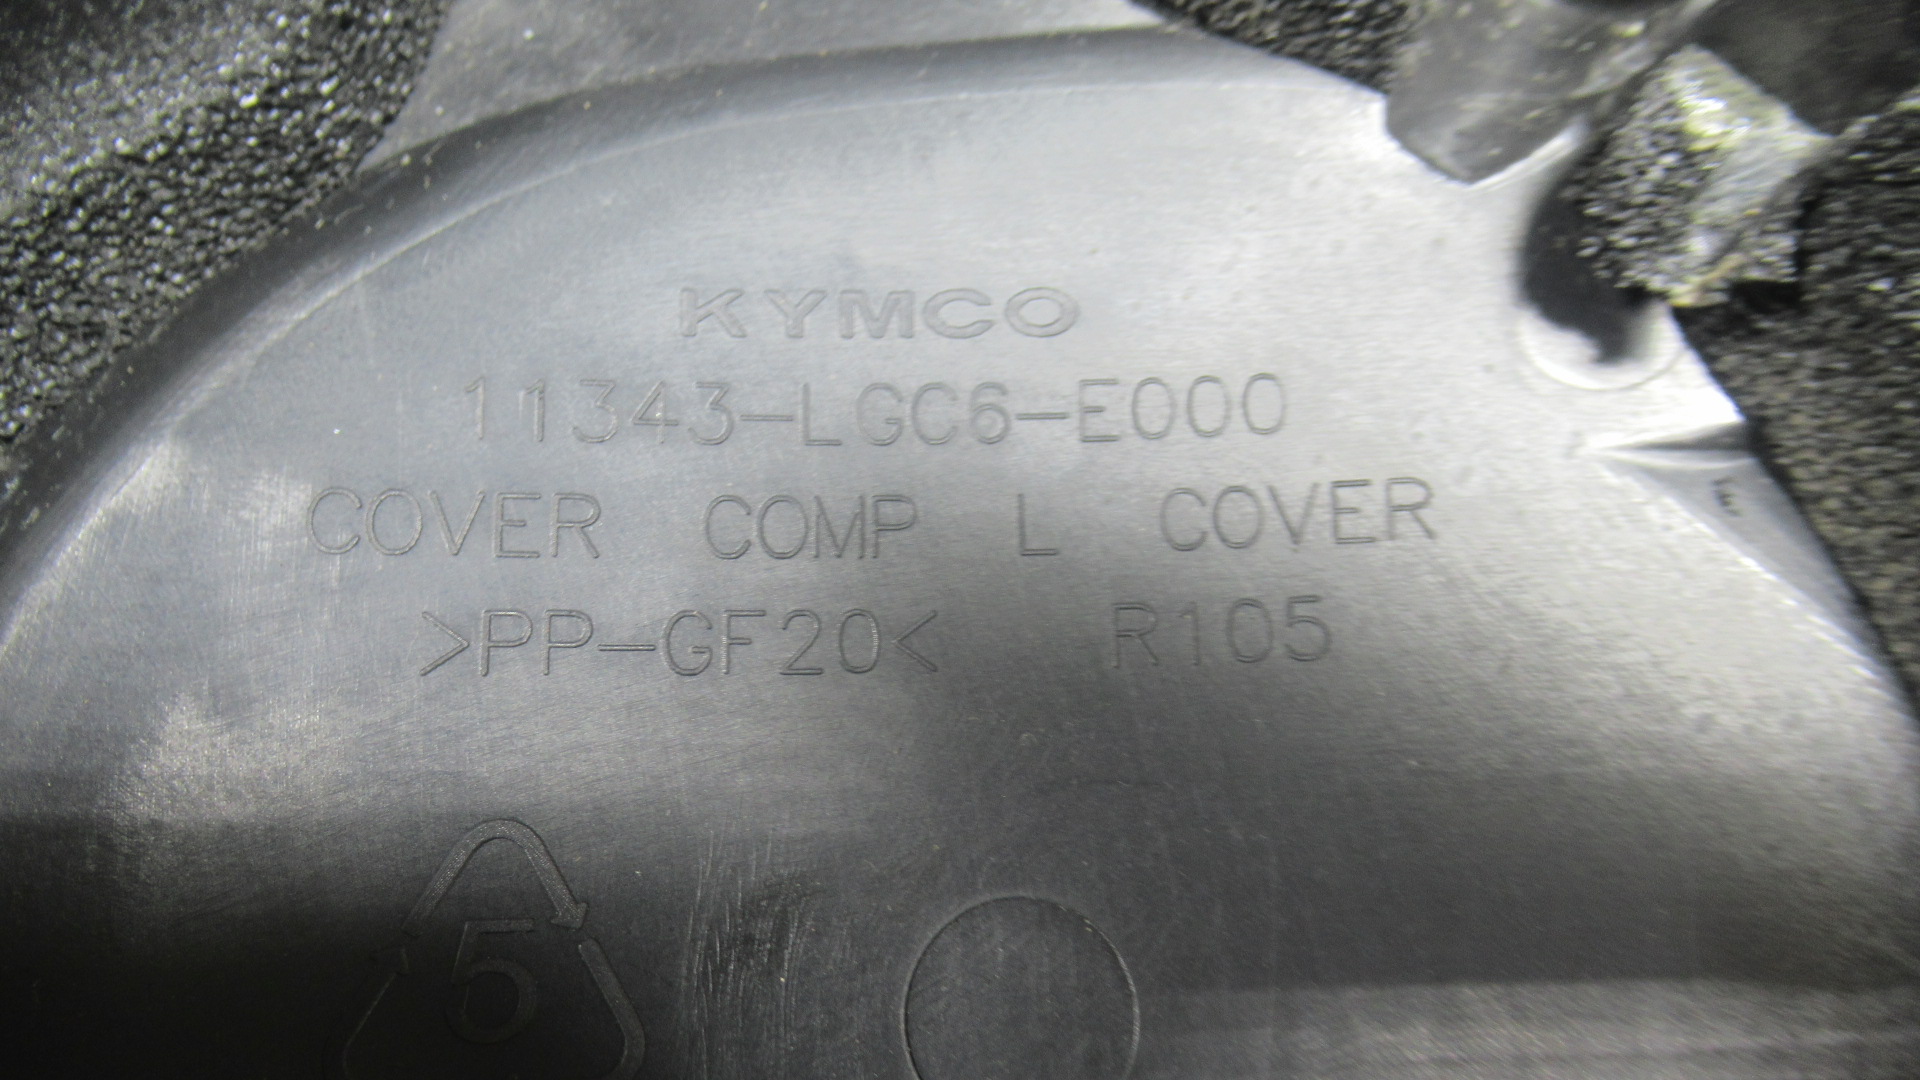 Cache carter transmission Kymco AK 550 4t (11343-LGC6-E000)